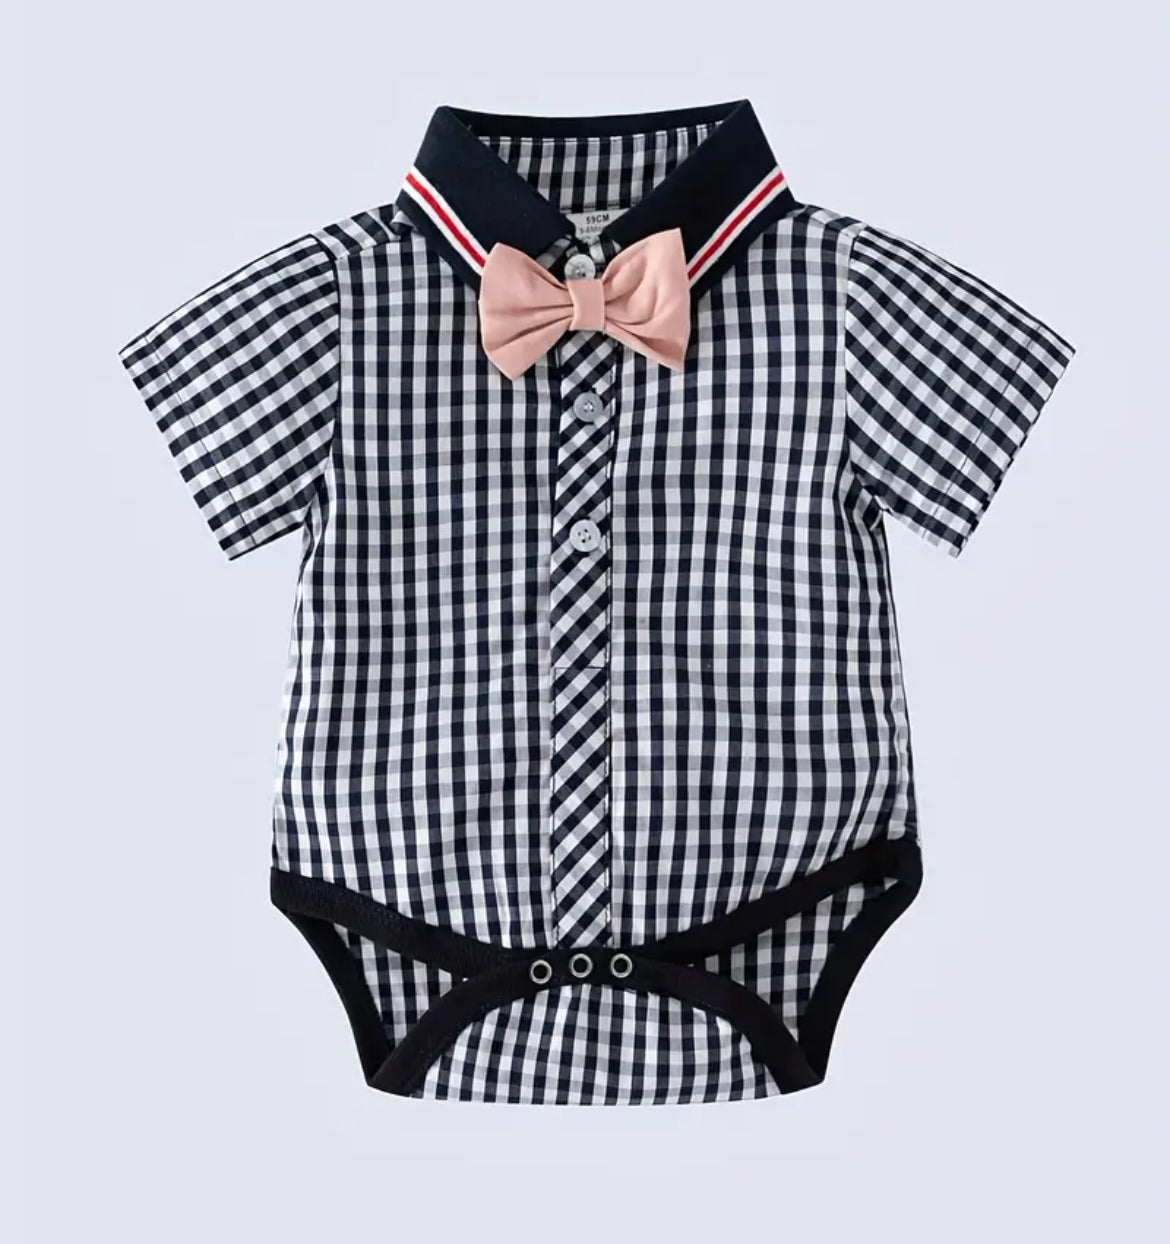 Pink Bowtie’s & Suspender Shorts Set